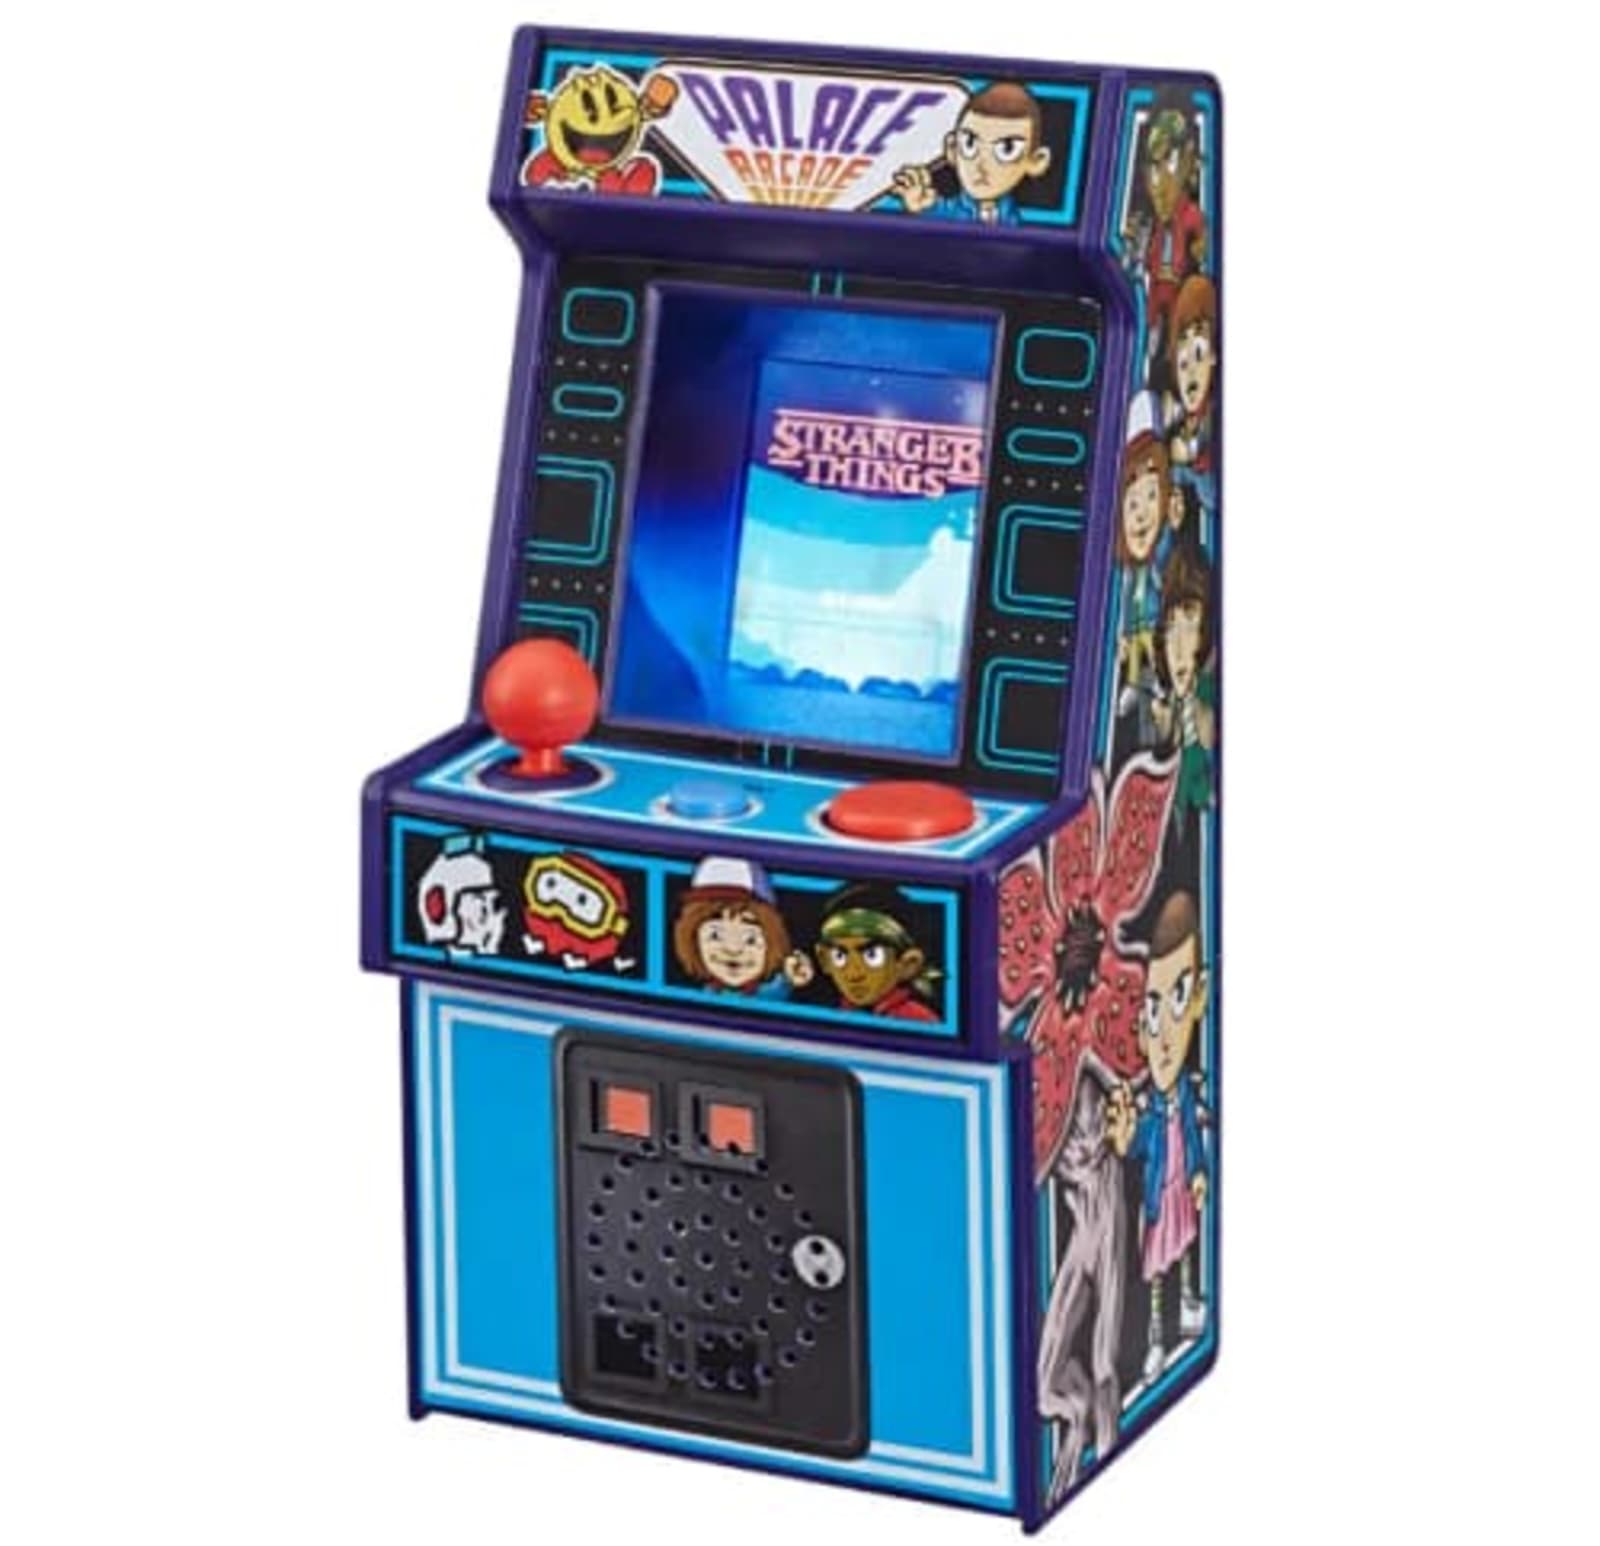 'Stranger Things' mini arcade game